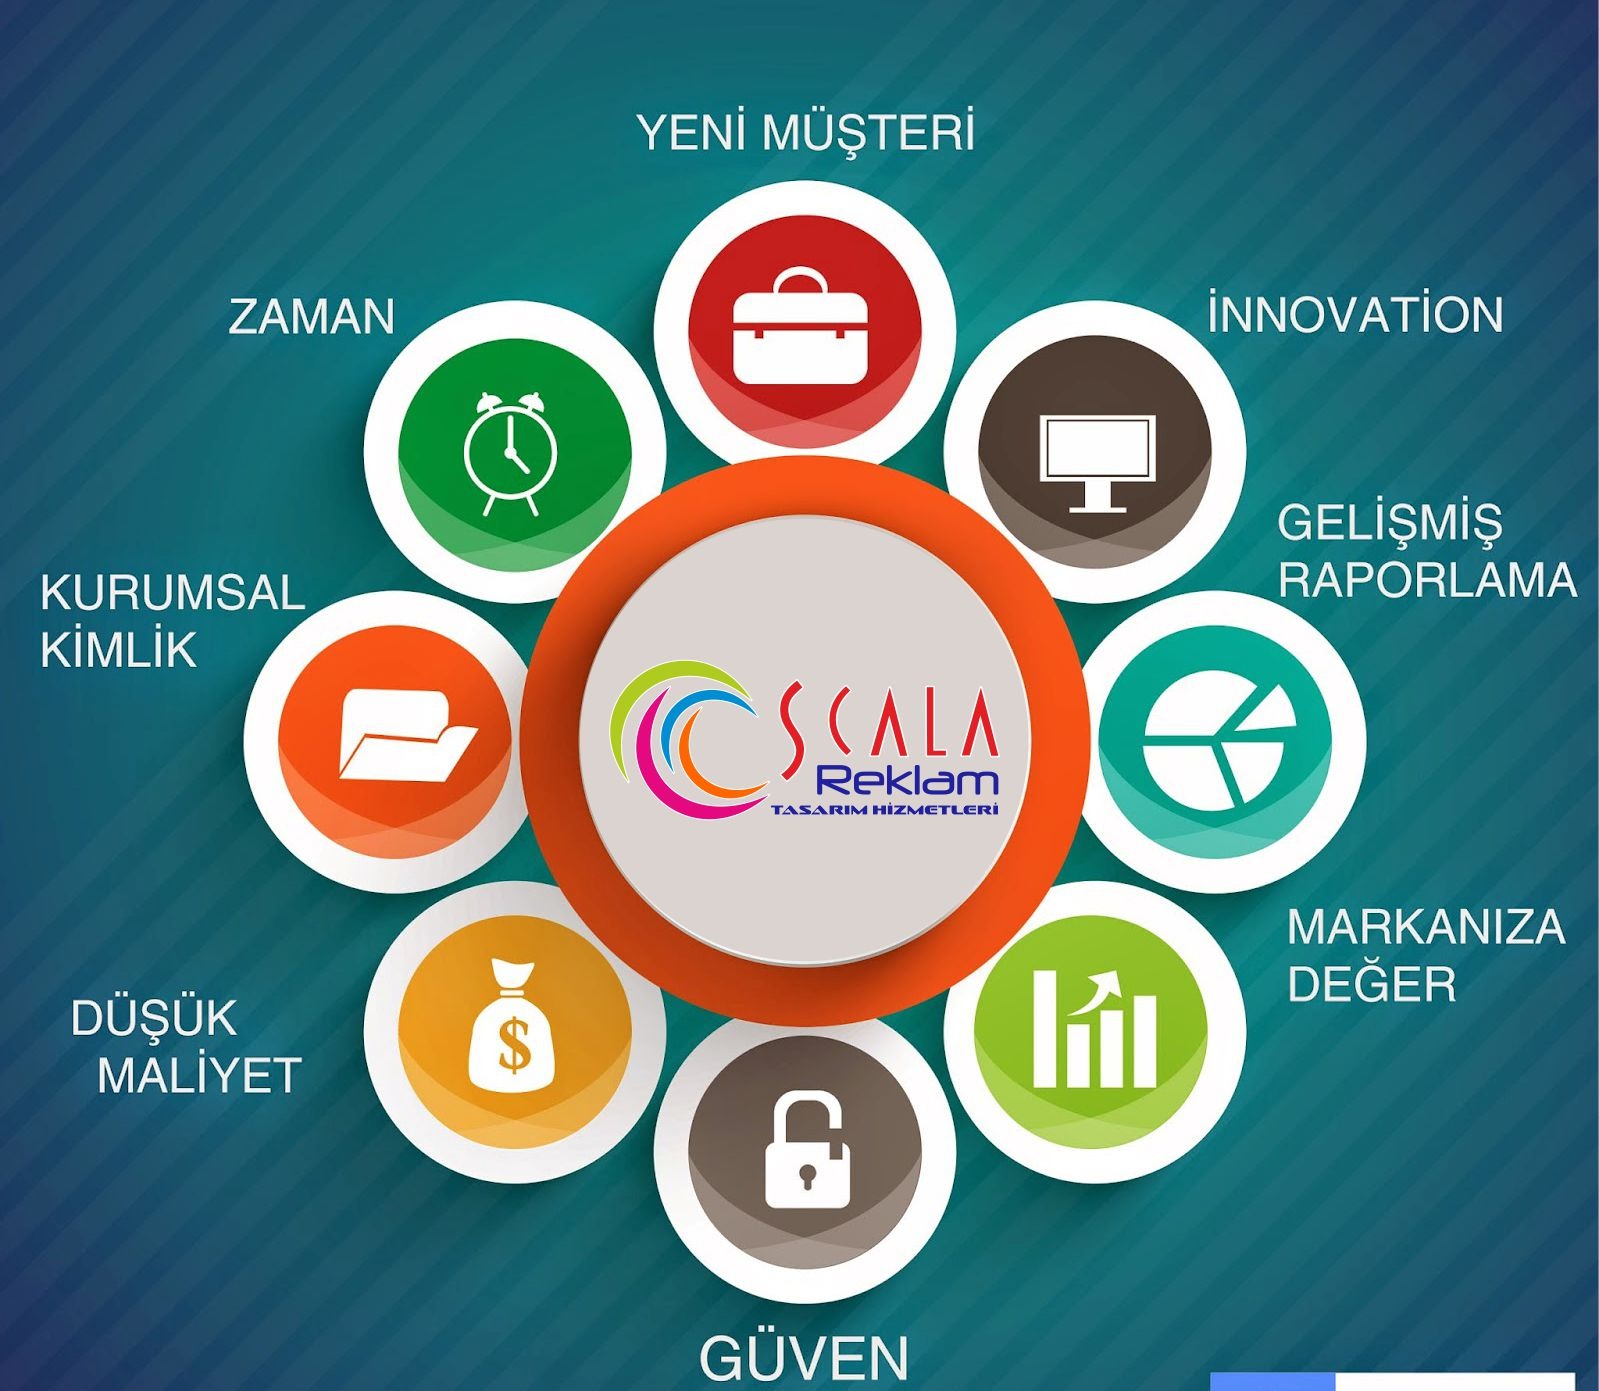 Scala, Scala Reklam, Scala Reklam Matbaa, Davetiye, Promosyon, İş Elbiseleri, Web Tasarım, Sosyal Medya Yönetimi, Matbaa, Tabela, Kolonya